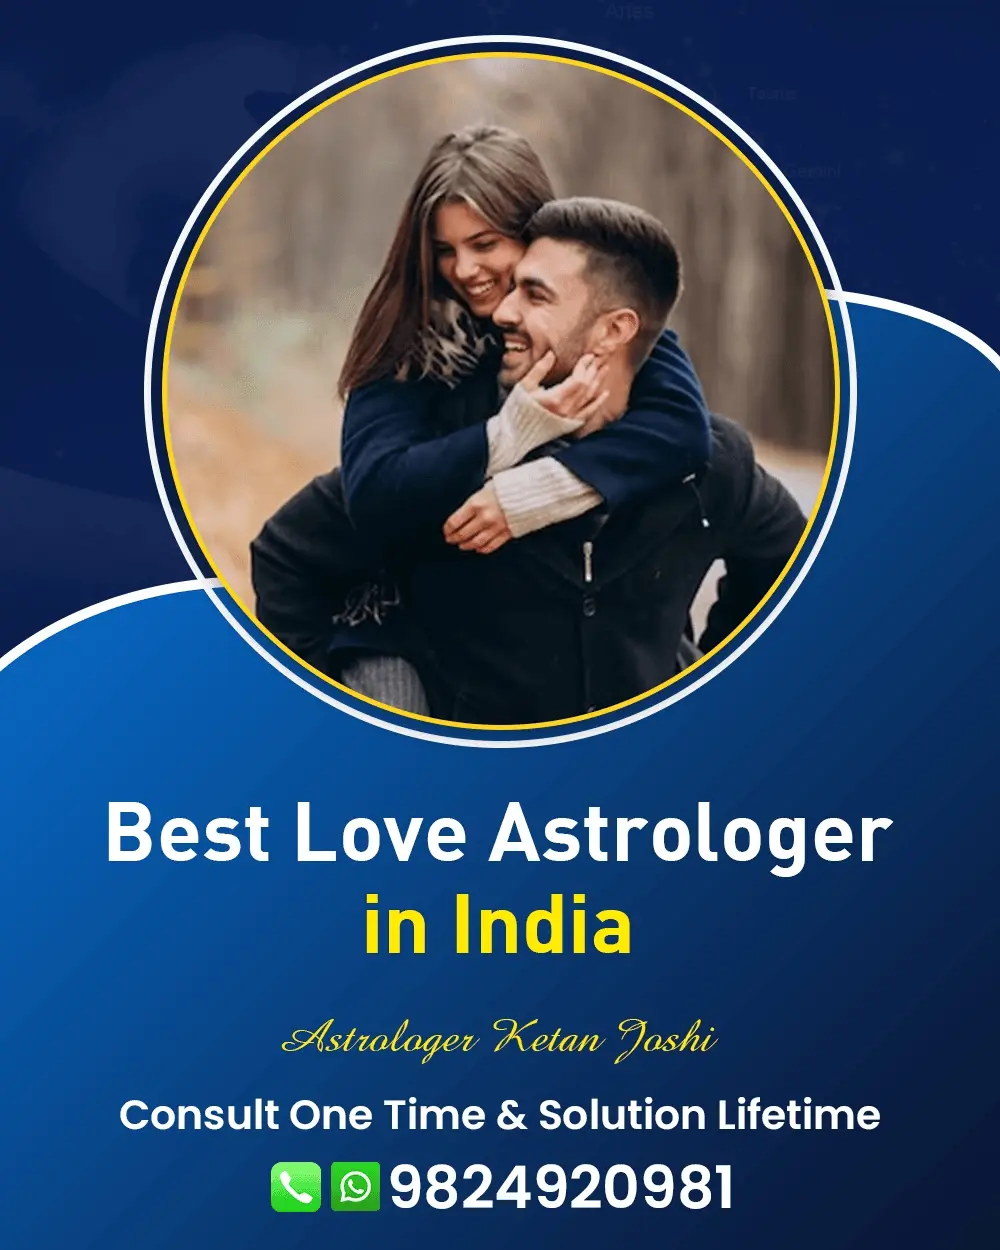 Love Problem Astrologer In Pune